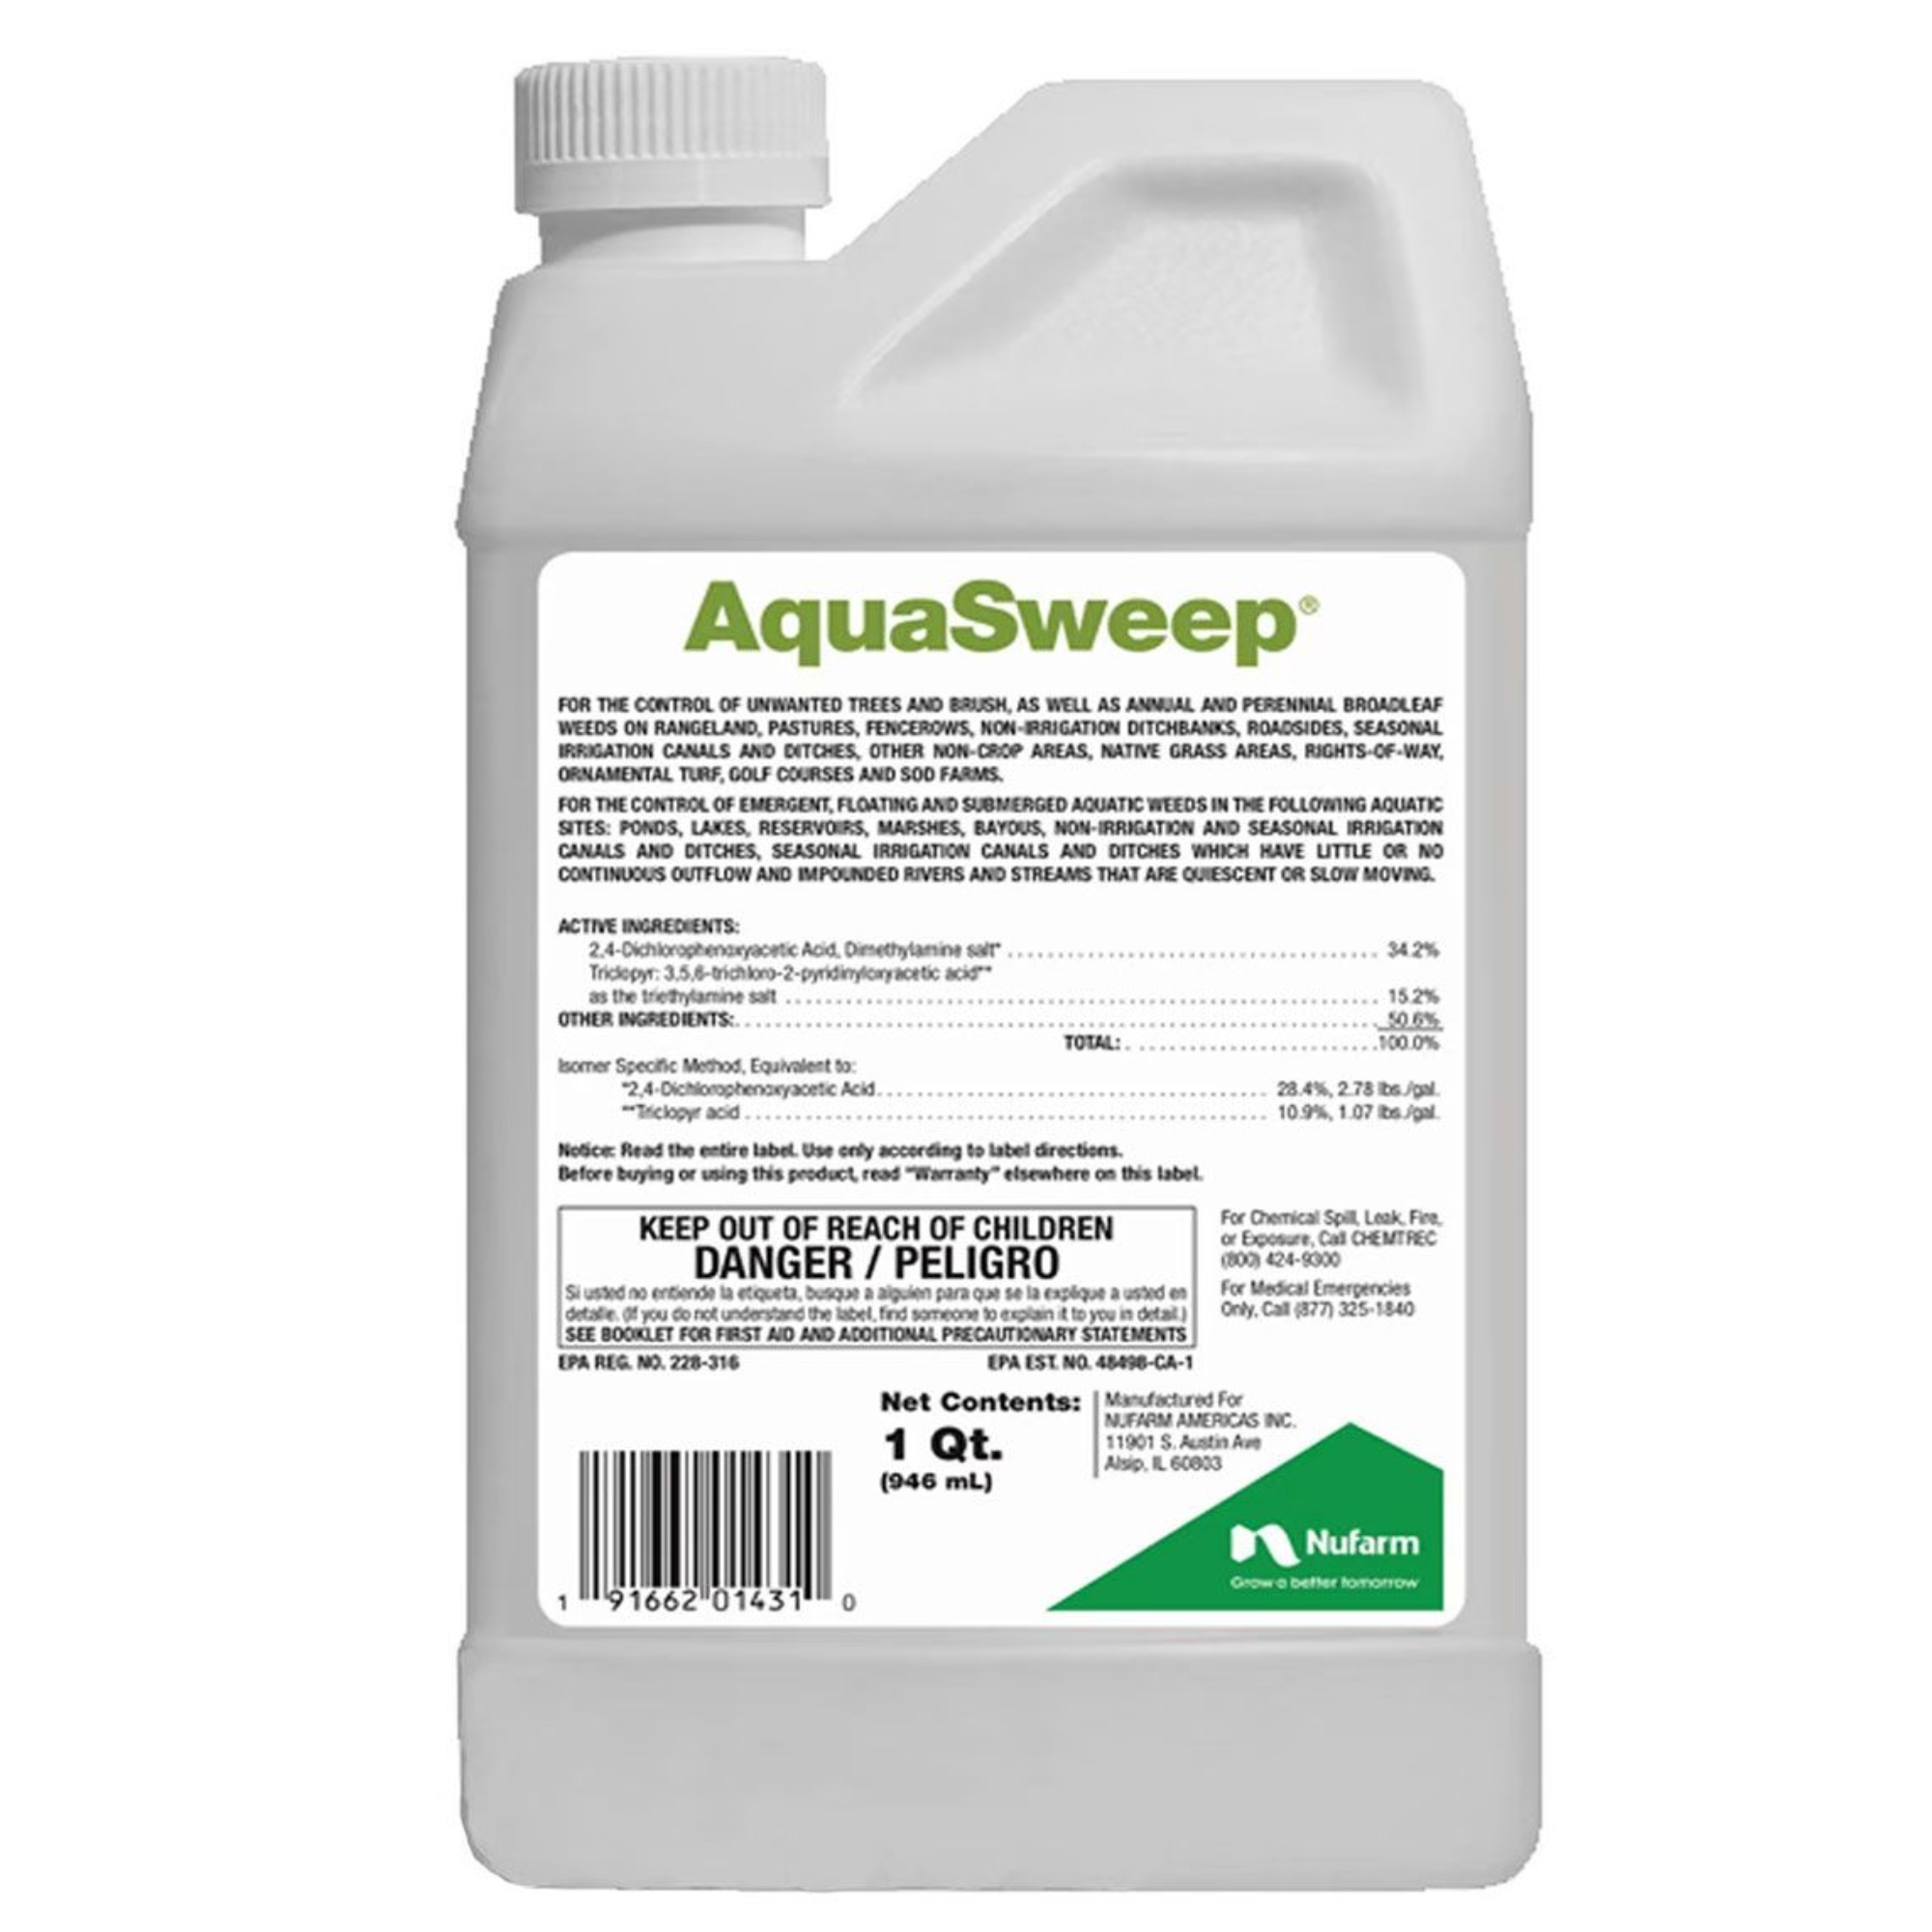 Nufarm AquaSweep Aquatic Herbicide, for Invasive and Noxious Weeds, 1qt